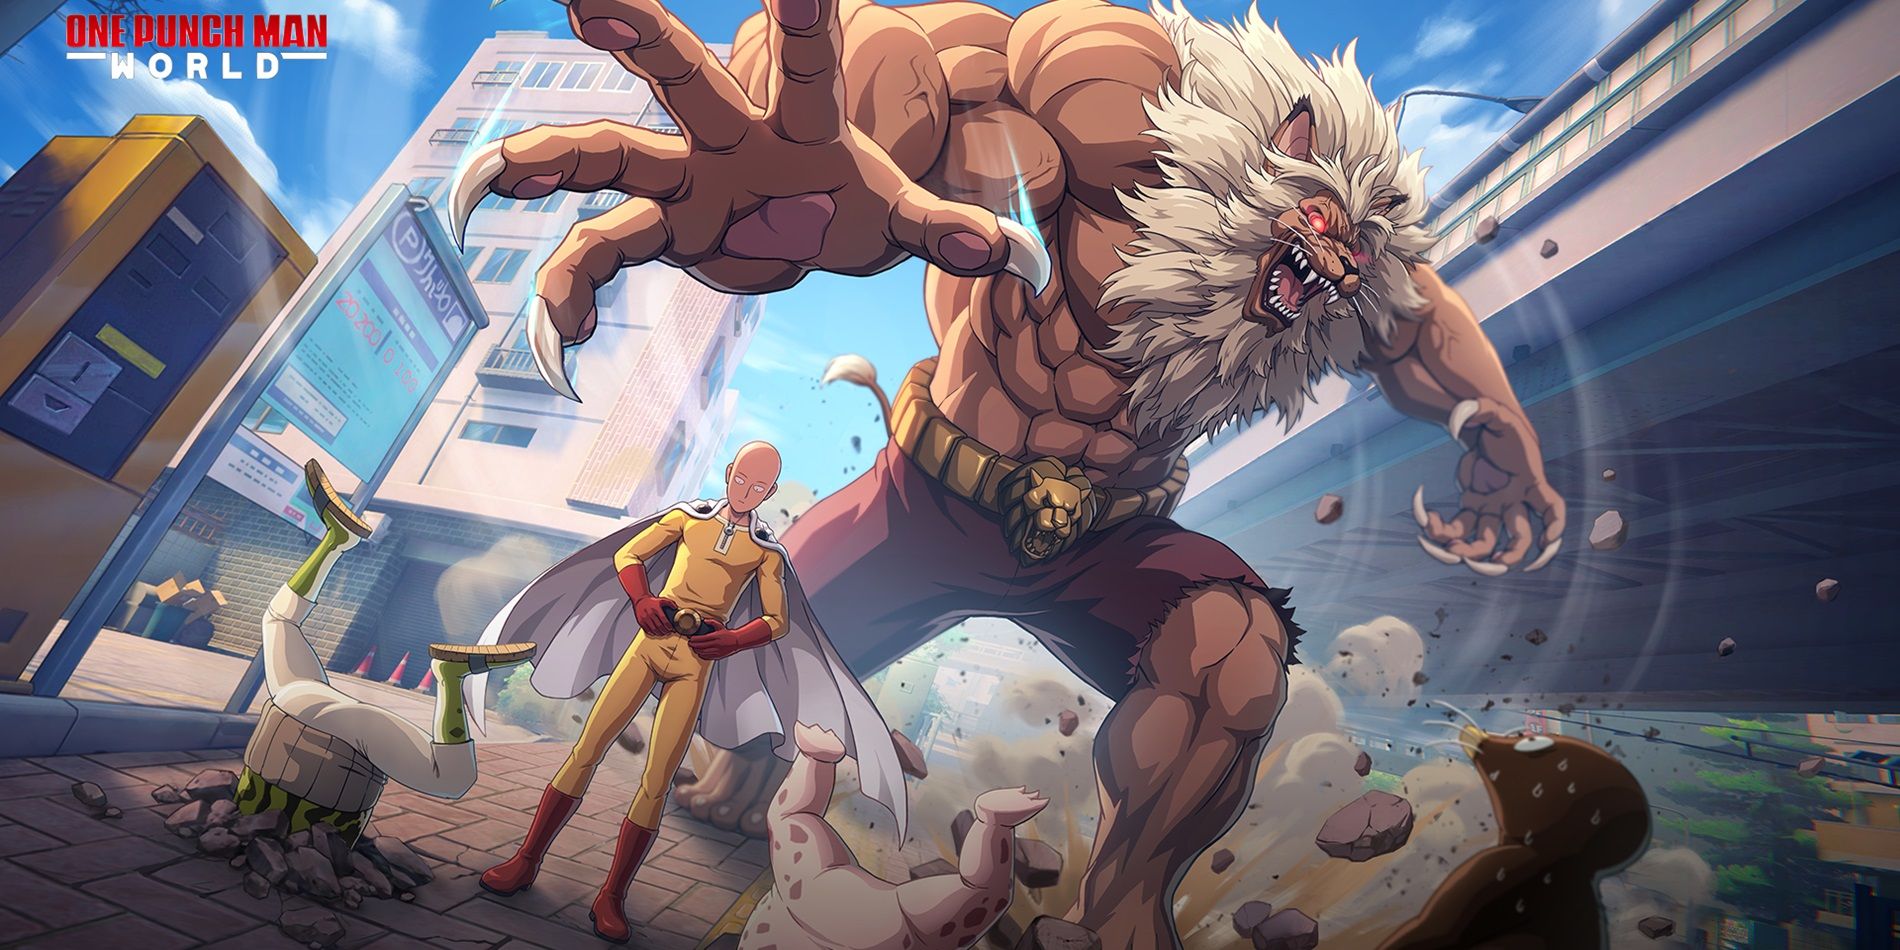 Crunchyroll introduces One Punch Man World